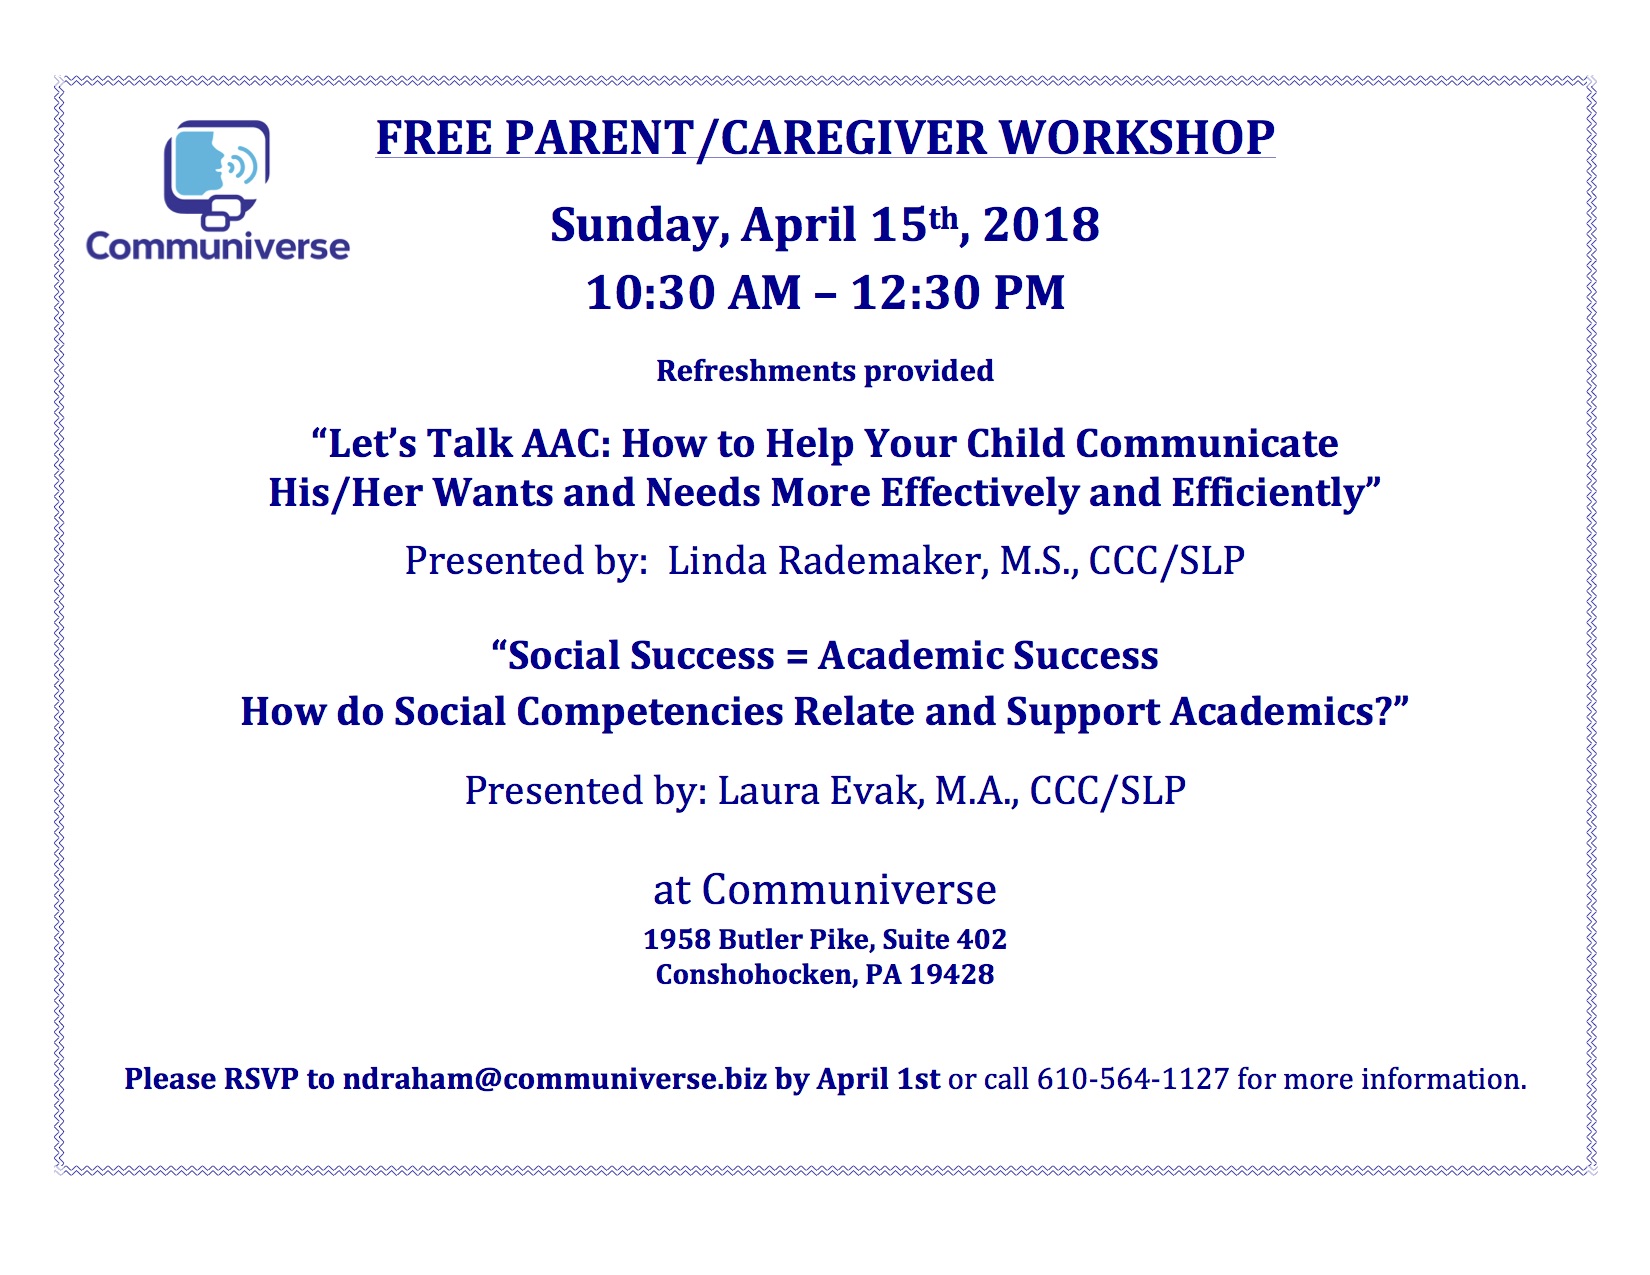 Free Parent/Caregiver Workshop